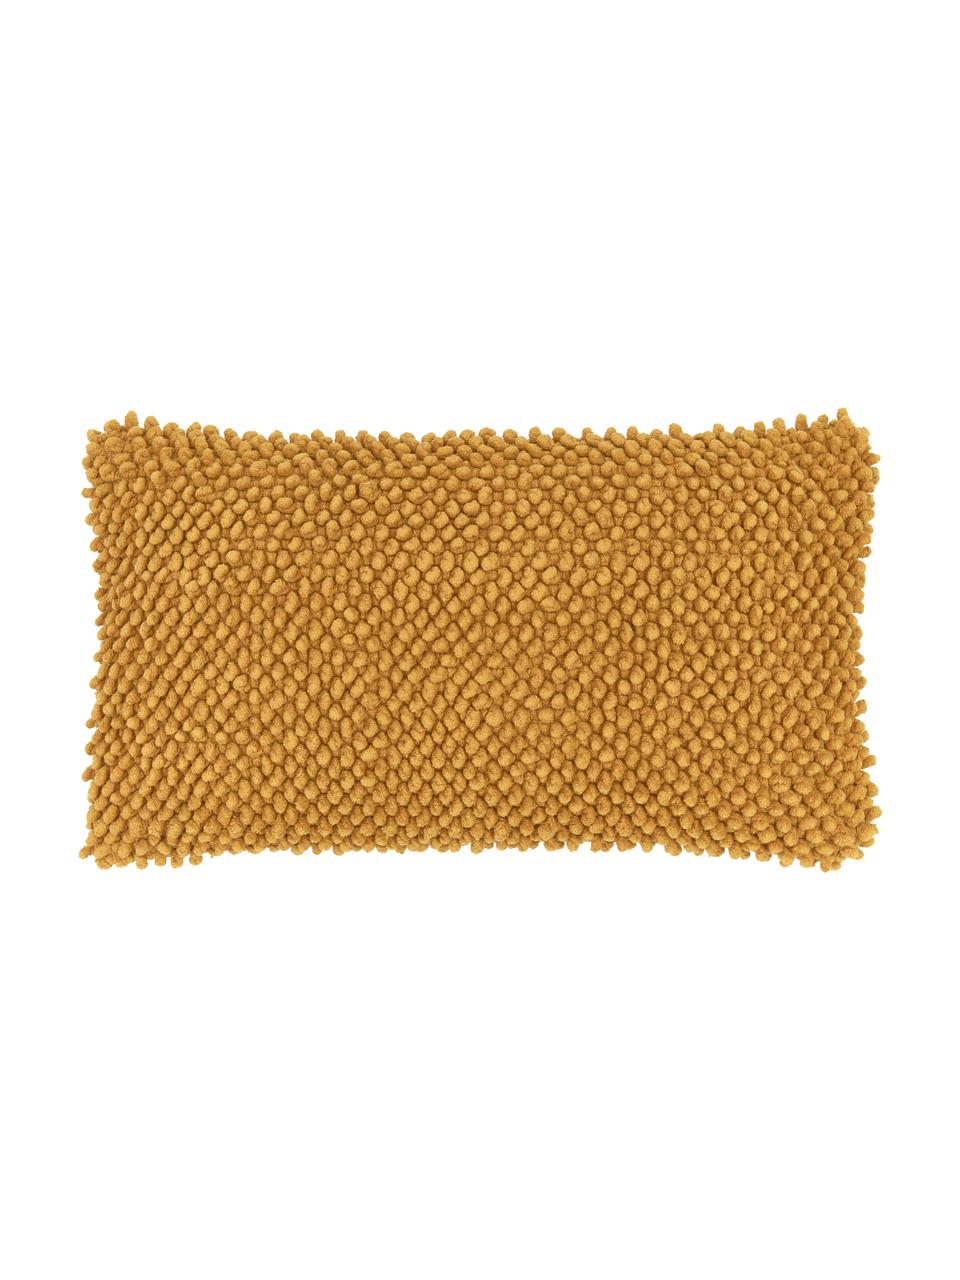 Kussenhoes Indi met gestructureerde oppervlak in mosterdgeel, 100% katoen, Mosterdgeel, 30 x 50 cm